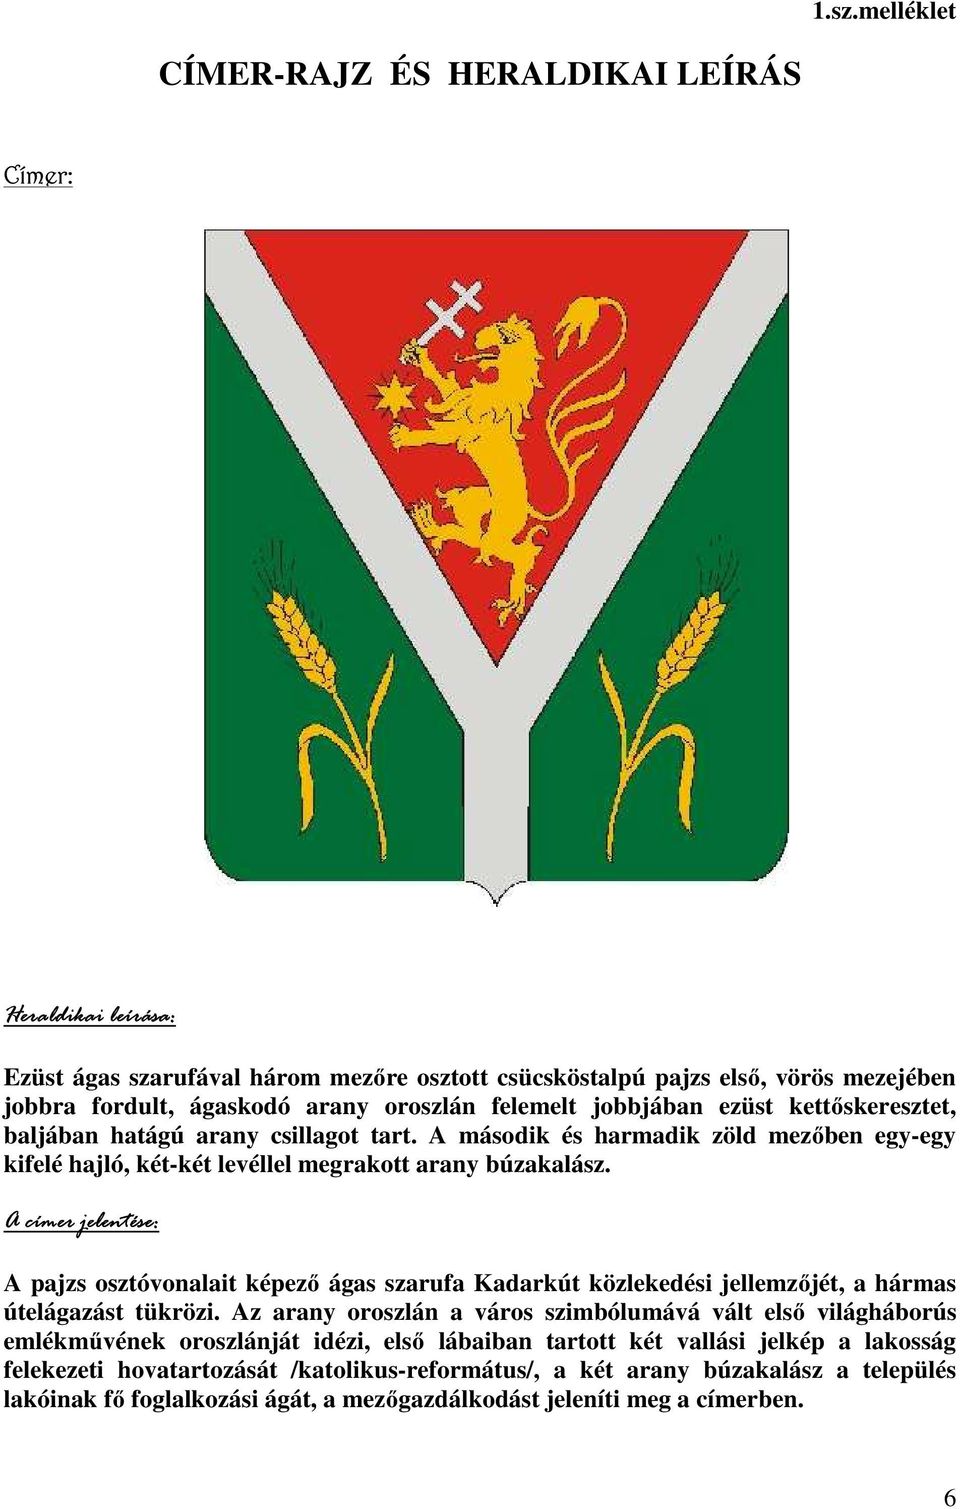 A címer jelentése: A pajzs osztóvonalait képezı ágas szarufa Kadarkút közlekedési jellemzıjét, a hármas útelágazást tükrözi.